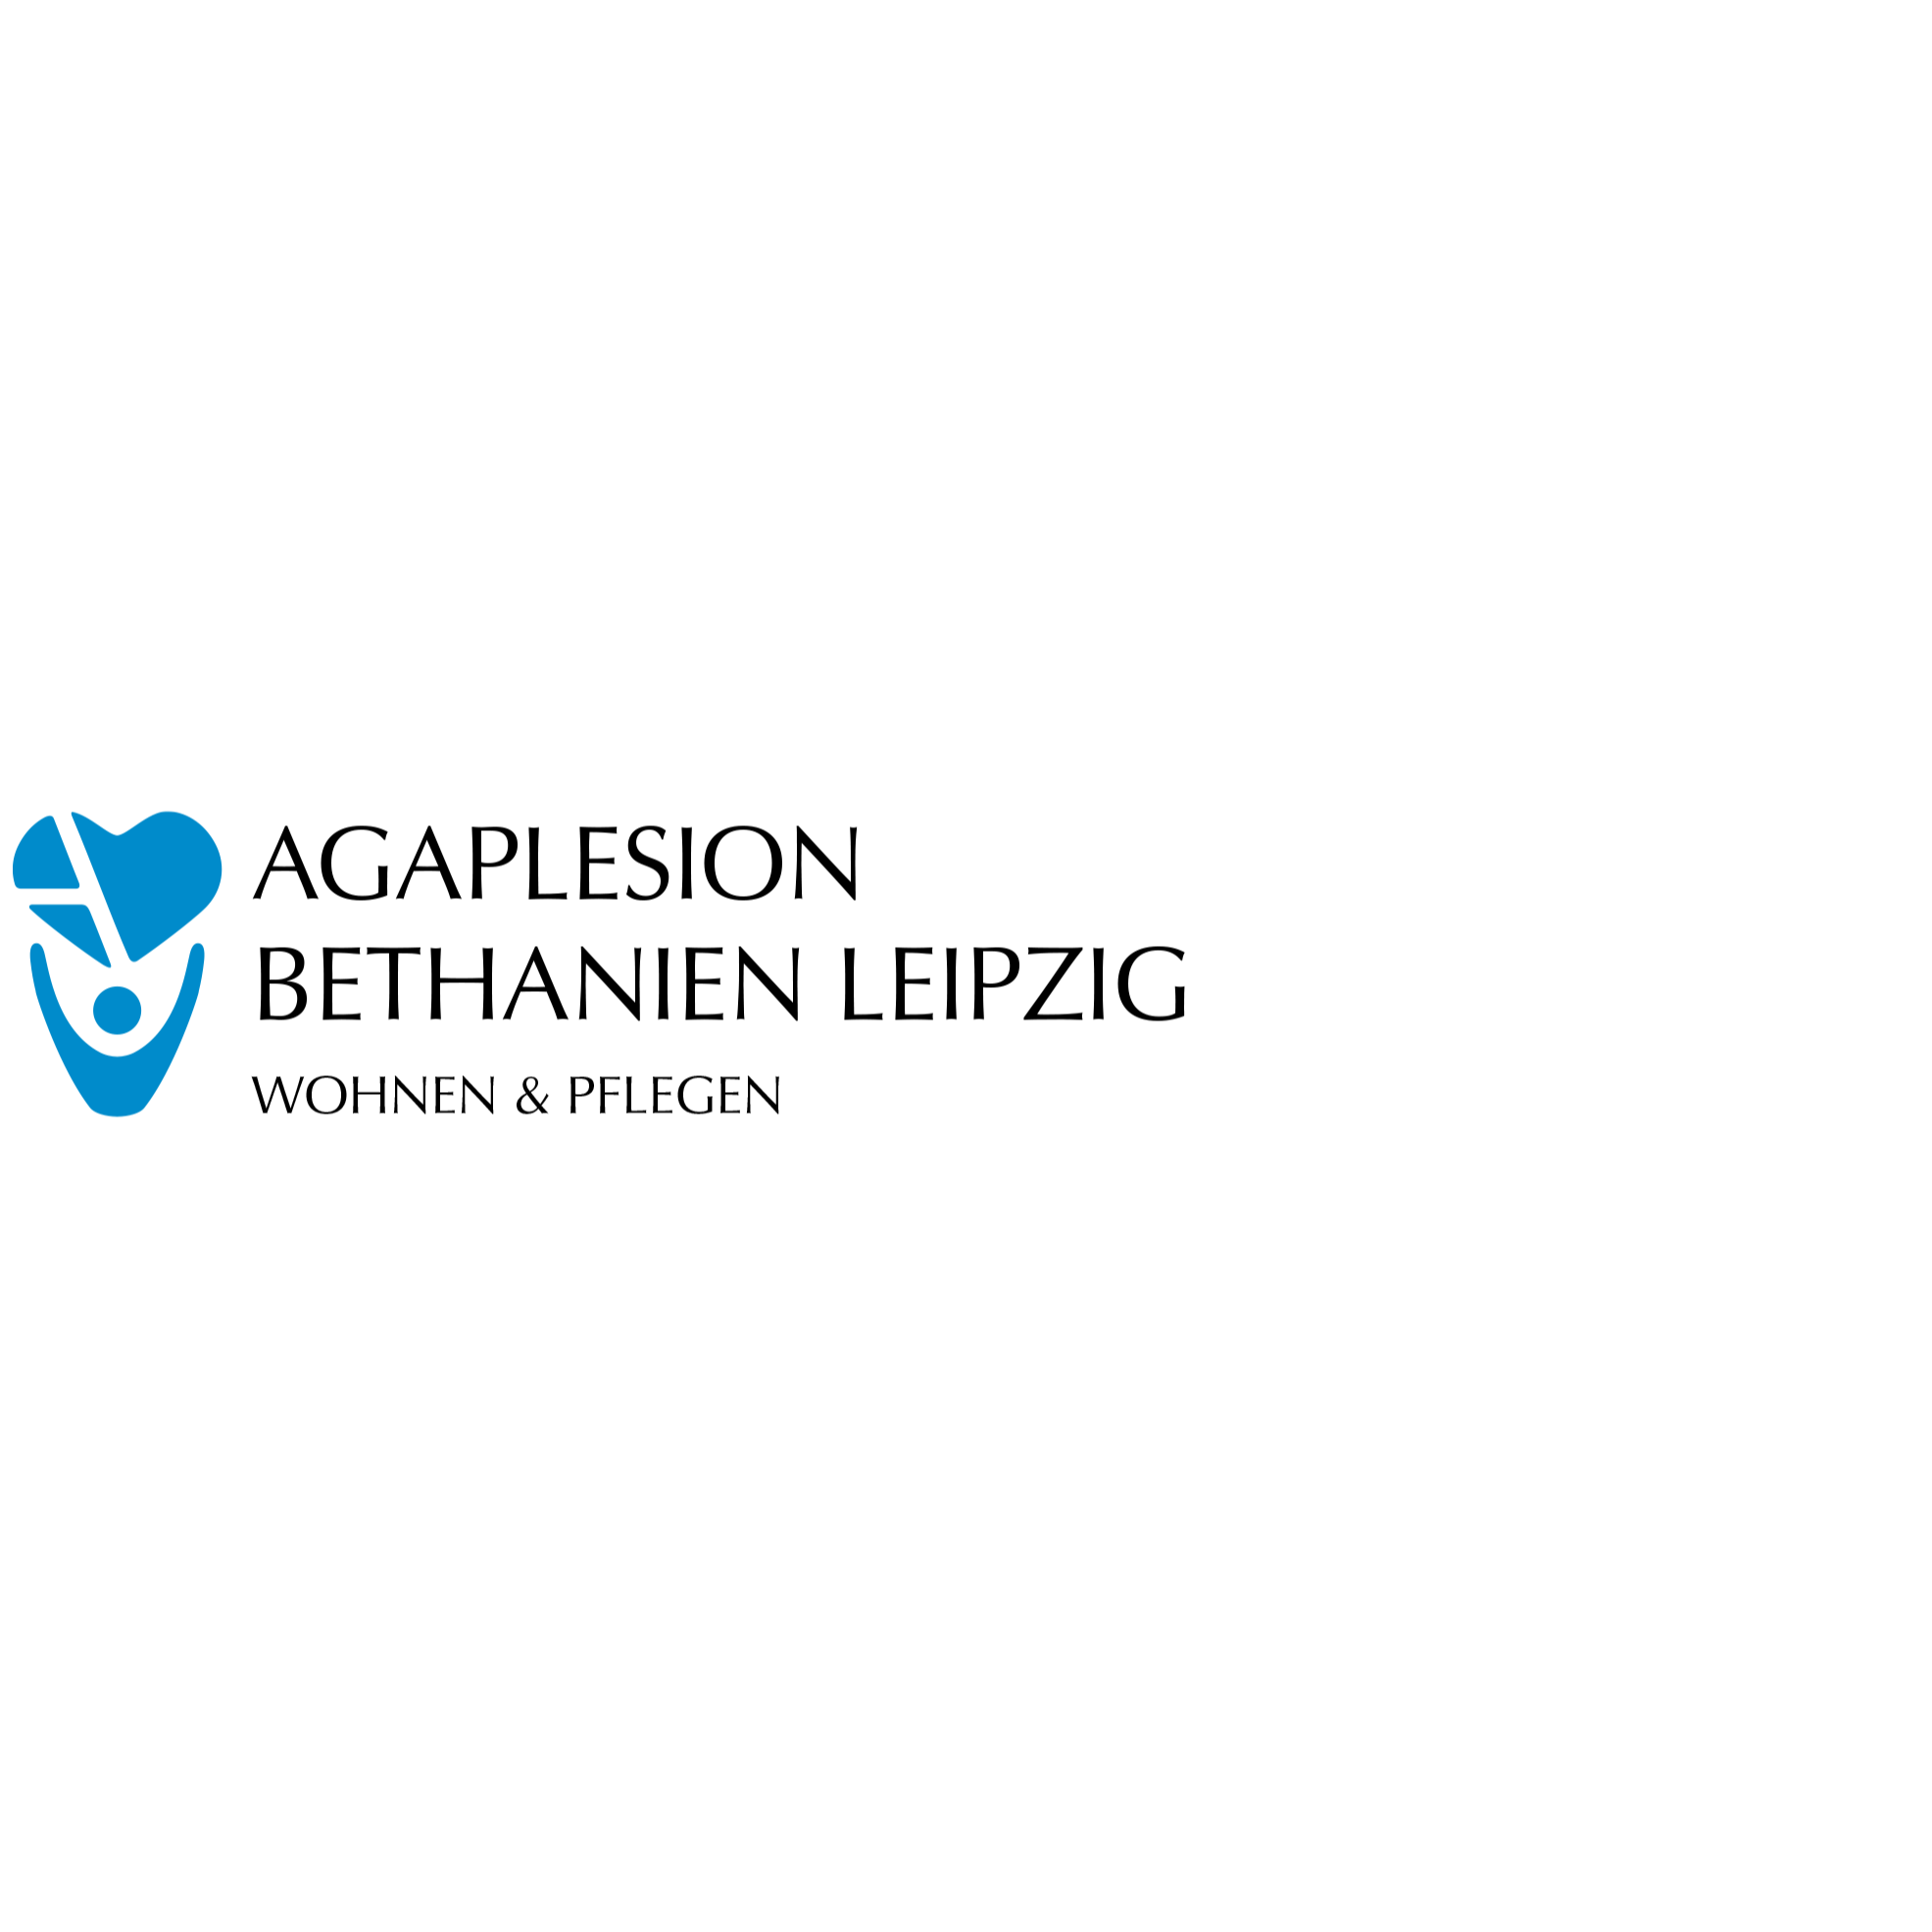 AGAPLESION BETHANIEN LEIPZIG Logo